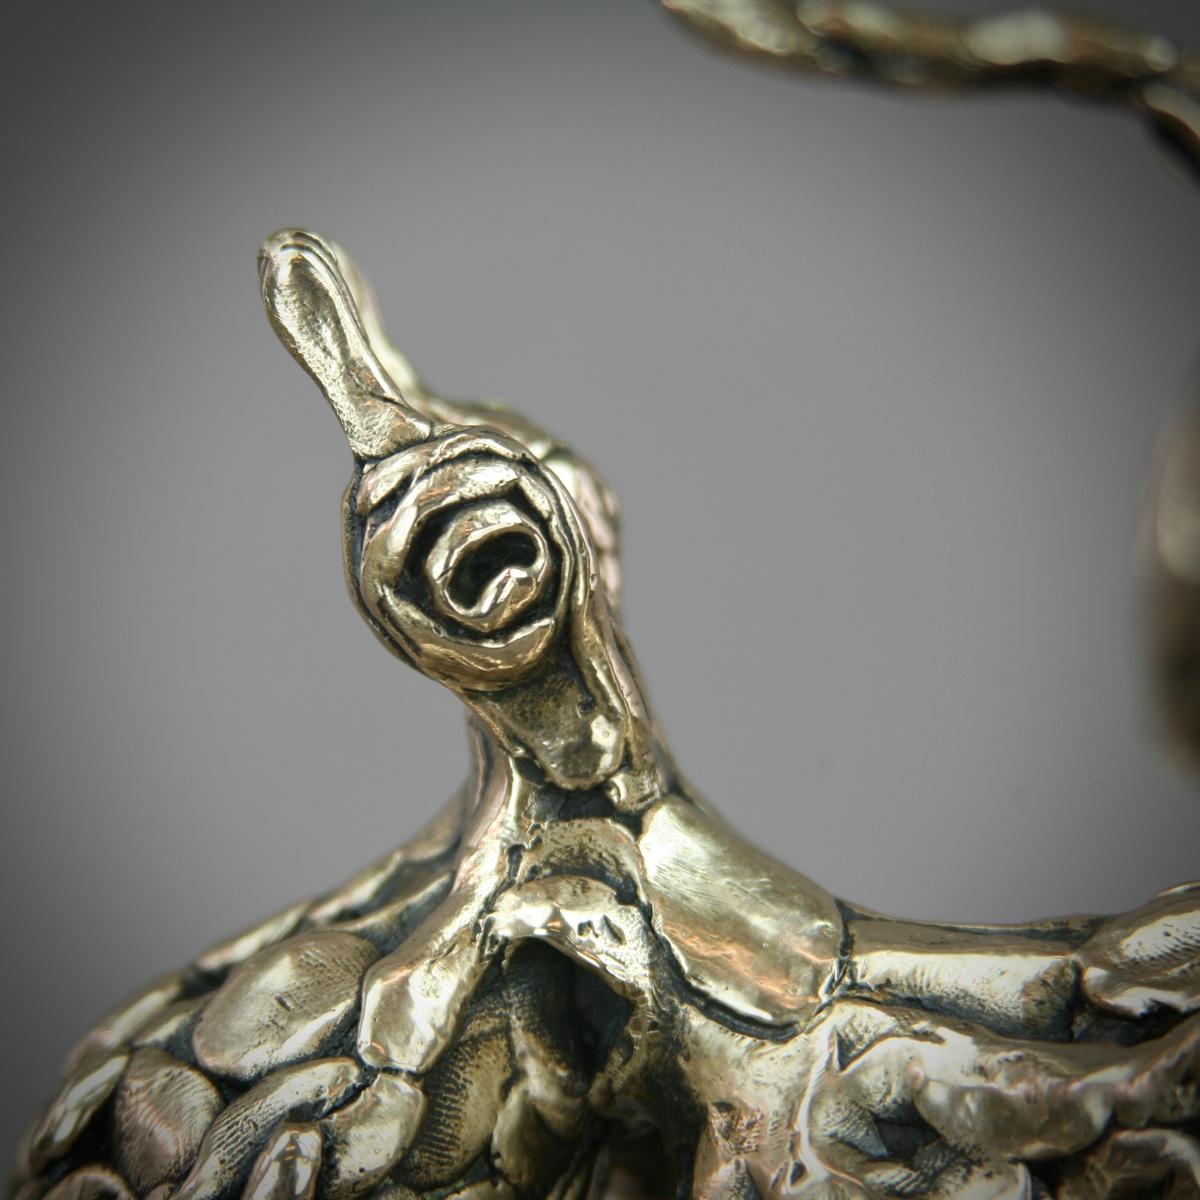 Sculpture en bronze de la pieuvre, édition limitée à  Le numéro 15 est une pièce magnifiquement sculptée par Andrzej Azymczyk. Il est magnifique, unique, complexe et très détaillé. 

Andrzej a obtenu un diplôme de maîtrise en beaux-arts à la faculté